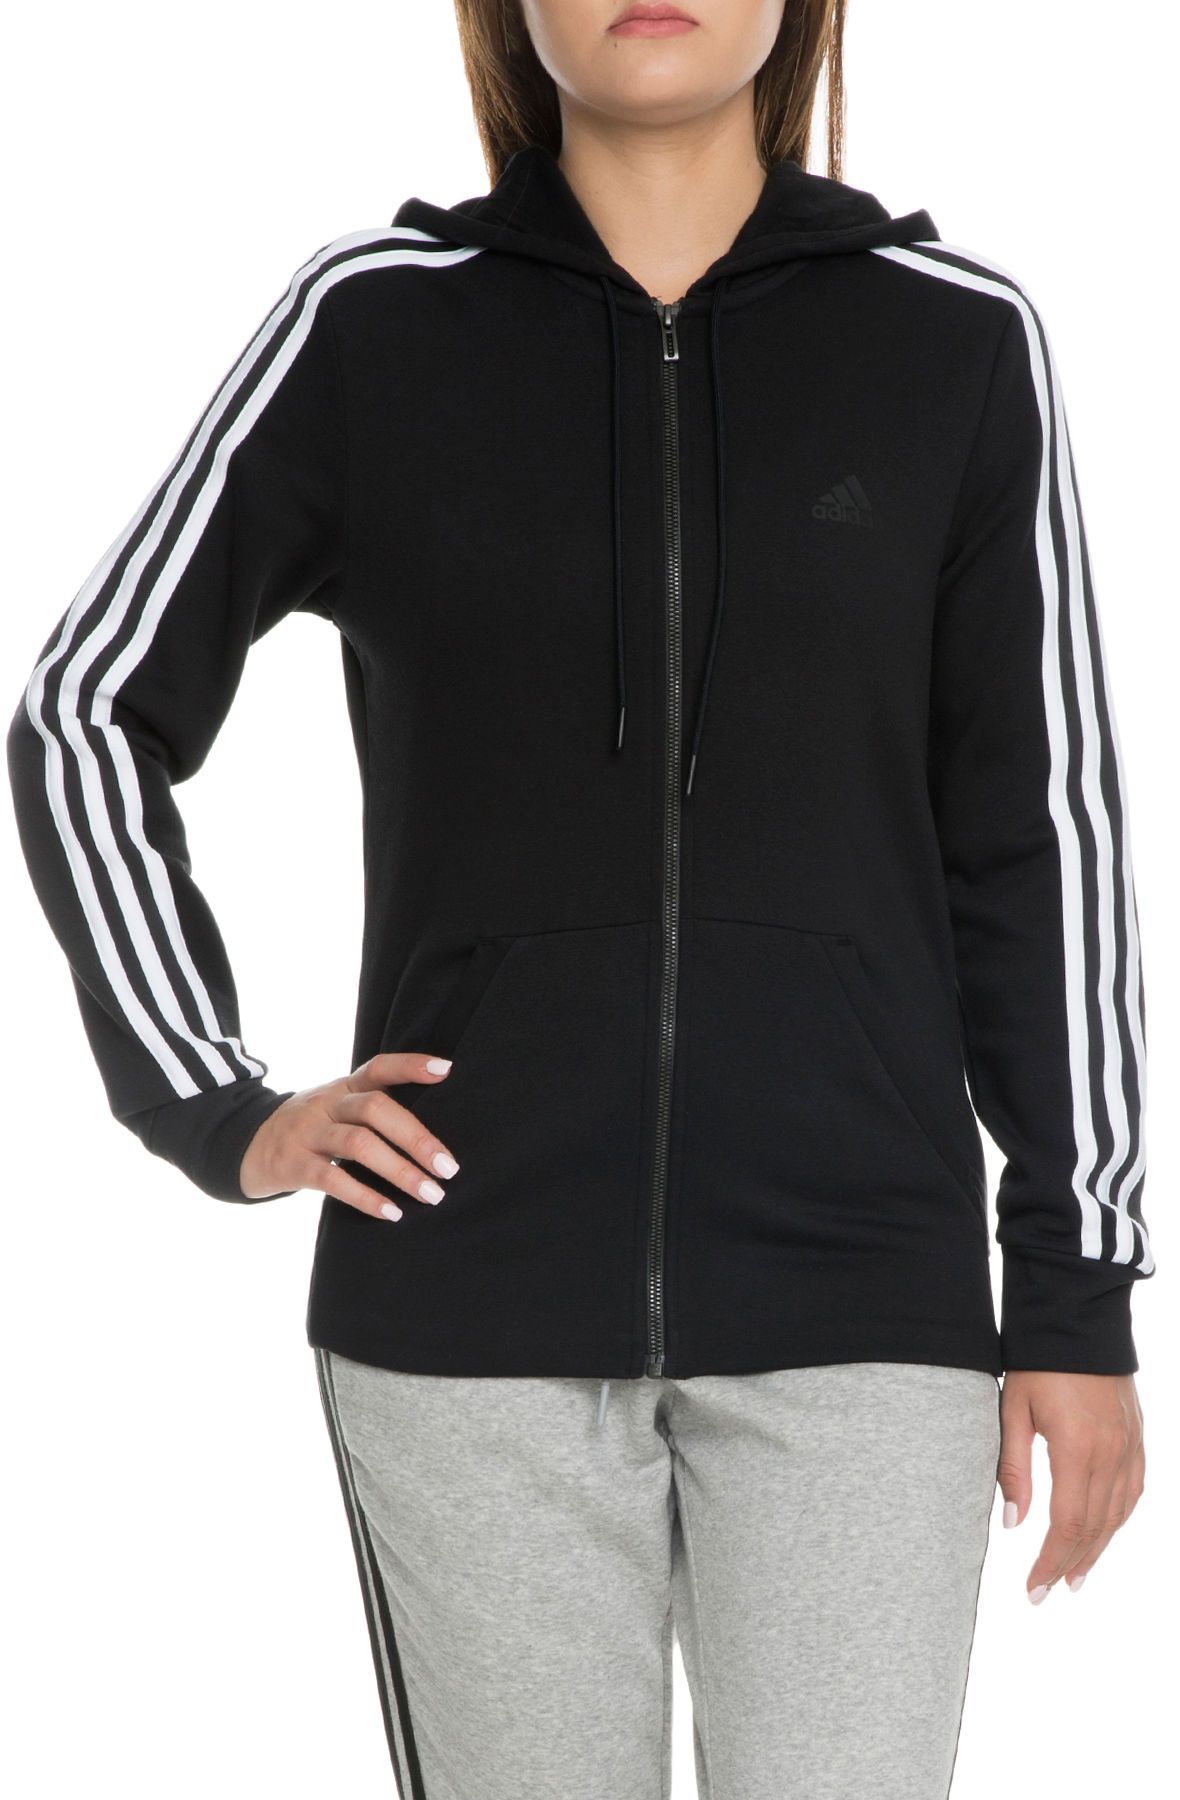 adidas zip up hoodie womens black